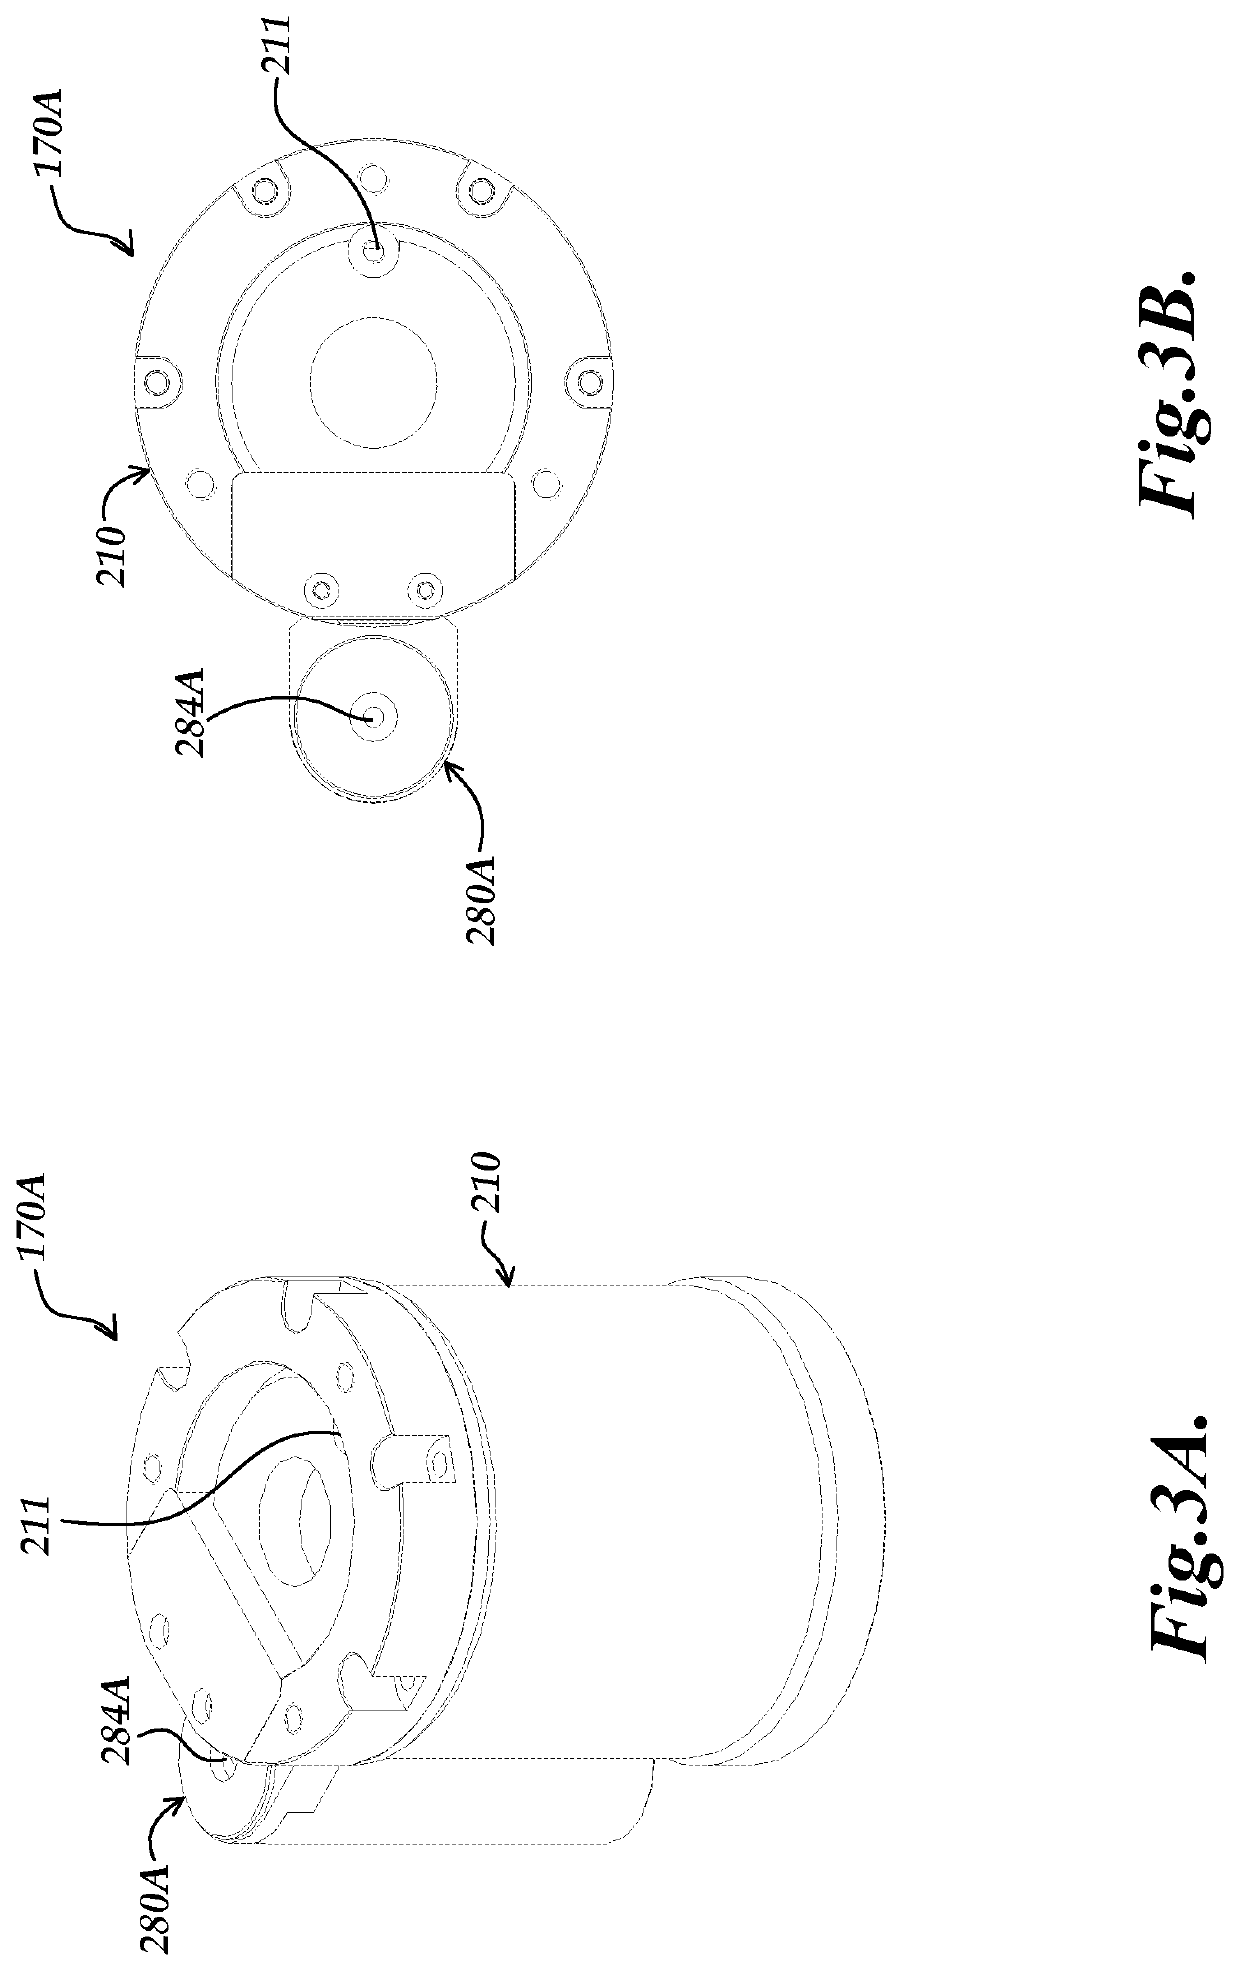 External reservoir configuration for tunable acoustic gradient lens